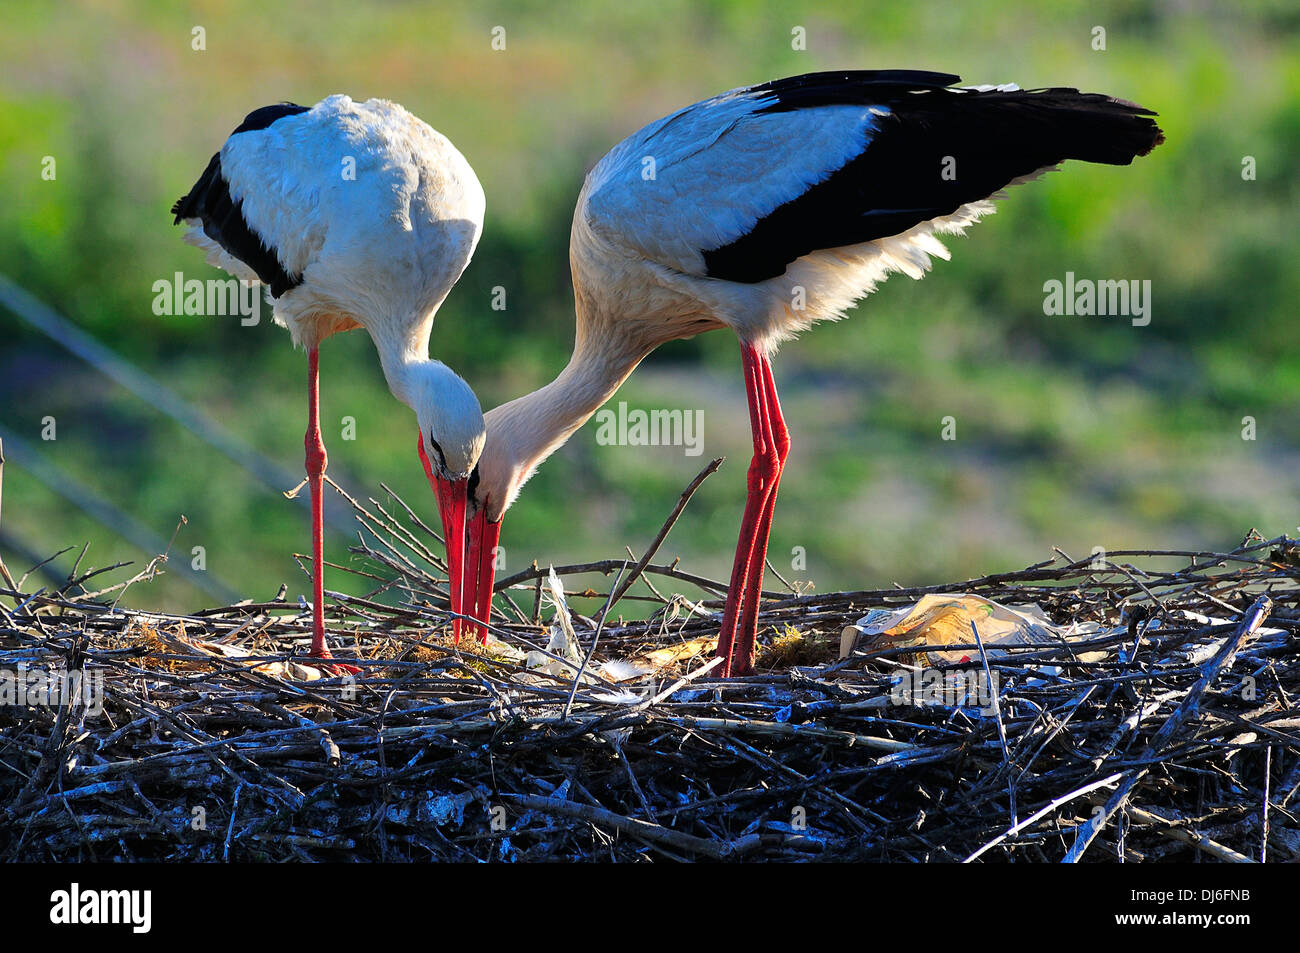 cigüeña blanca,pareja,reproducción animal,nido,naturaleza salvaje,medio ambiente Stock Photo